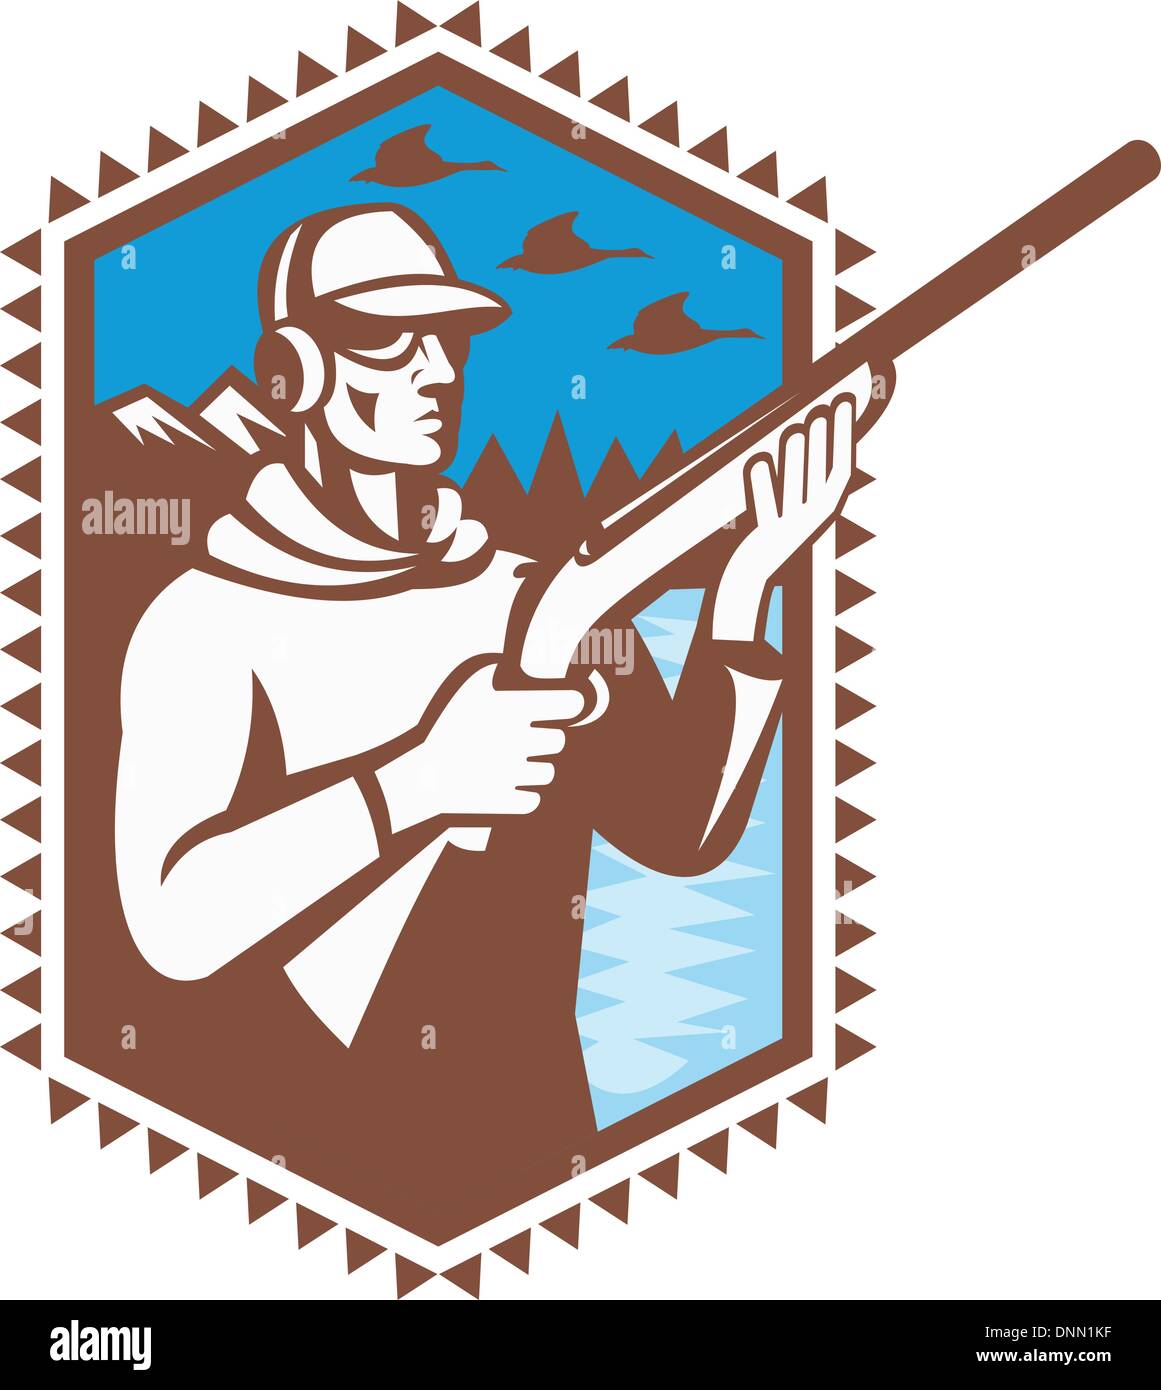 Abbildung eines Ente Jäger schützen mit Gewehr Gewehr mit Gänse und Berge im Hintergrund getan im retro-Stil. Stock Vektor